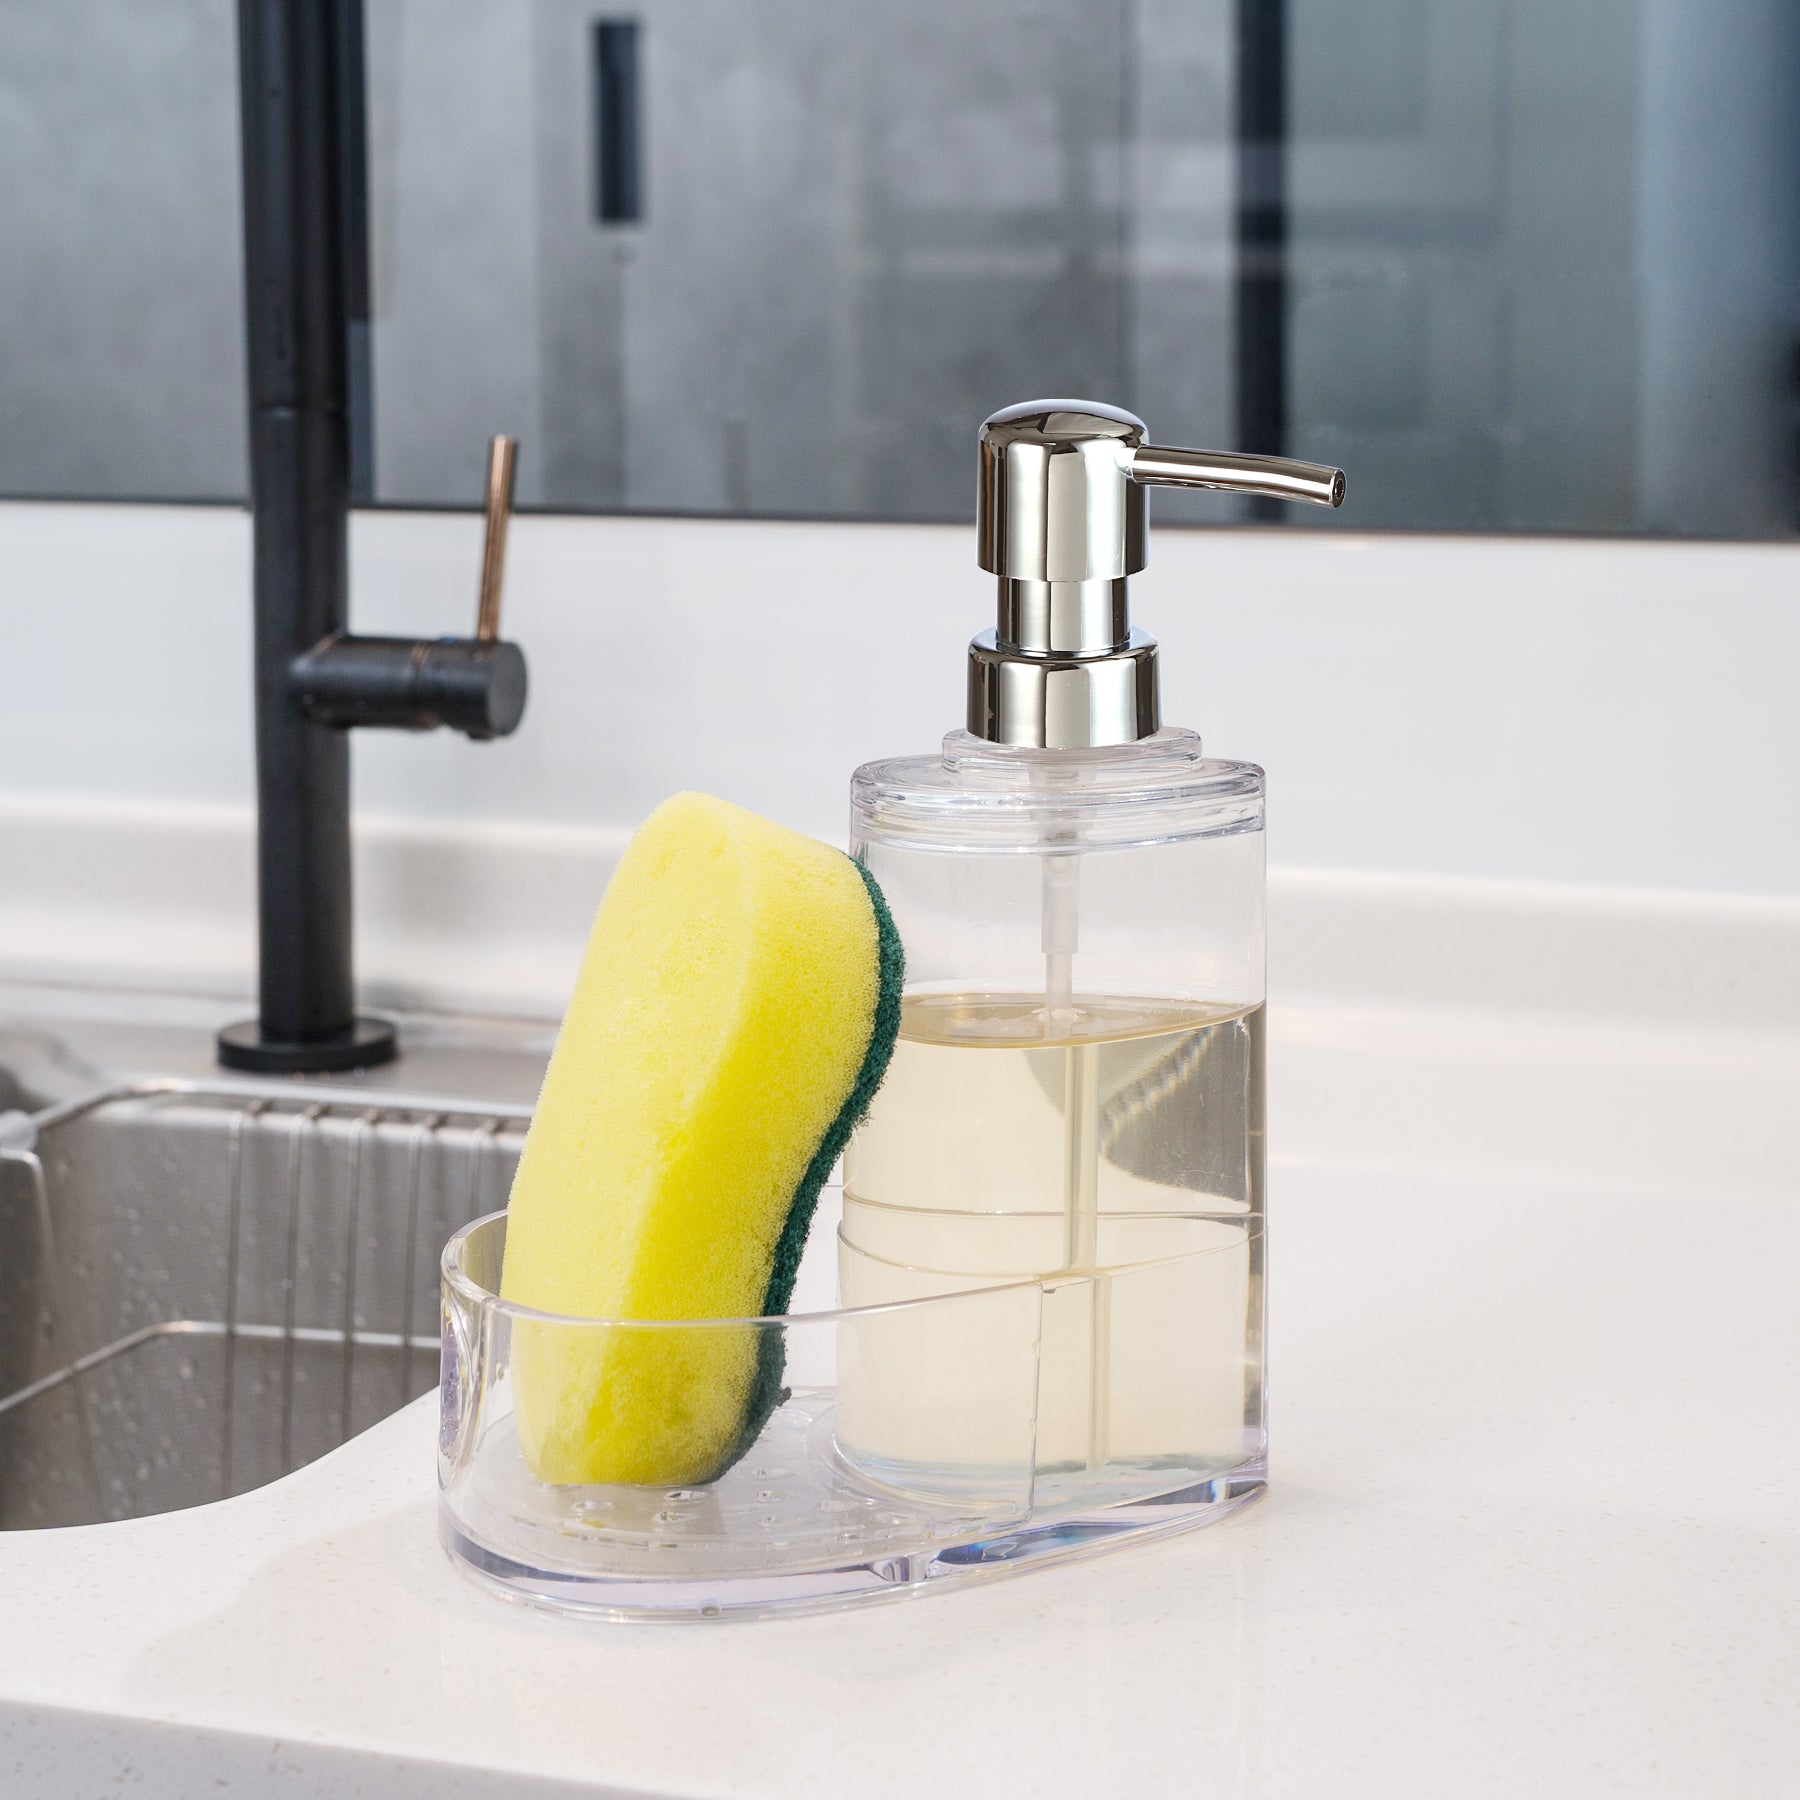 Soap Dispenser & Sponge Holder Combo - Felli Official